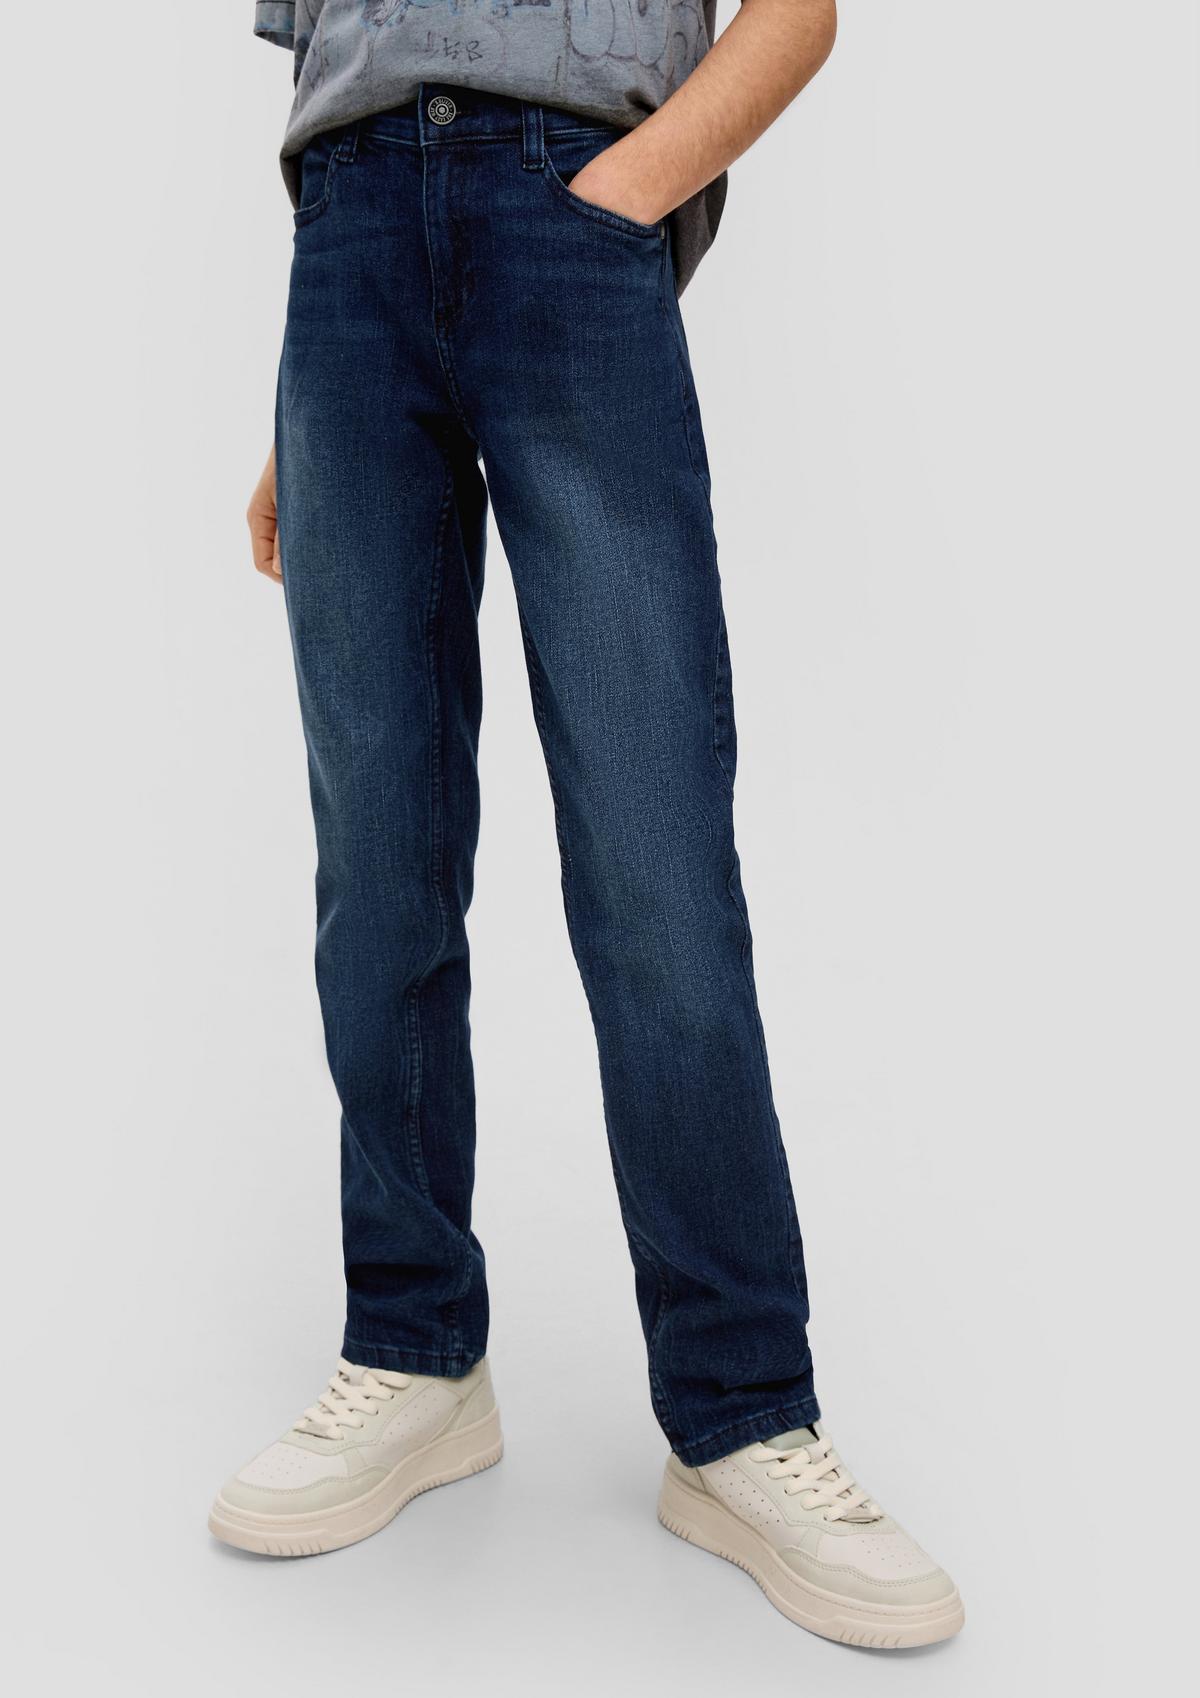 Jeans hlače Seattle/kroj Regular Fit/Mid Rise/ravne hlačnice